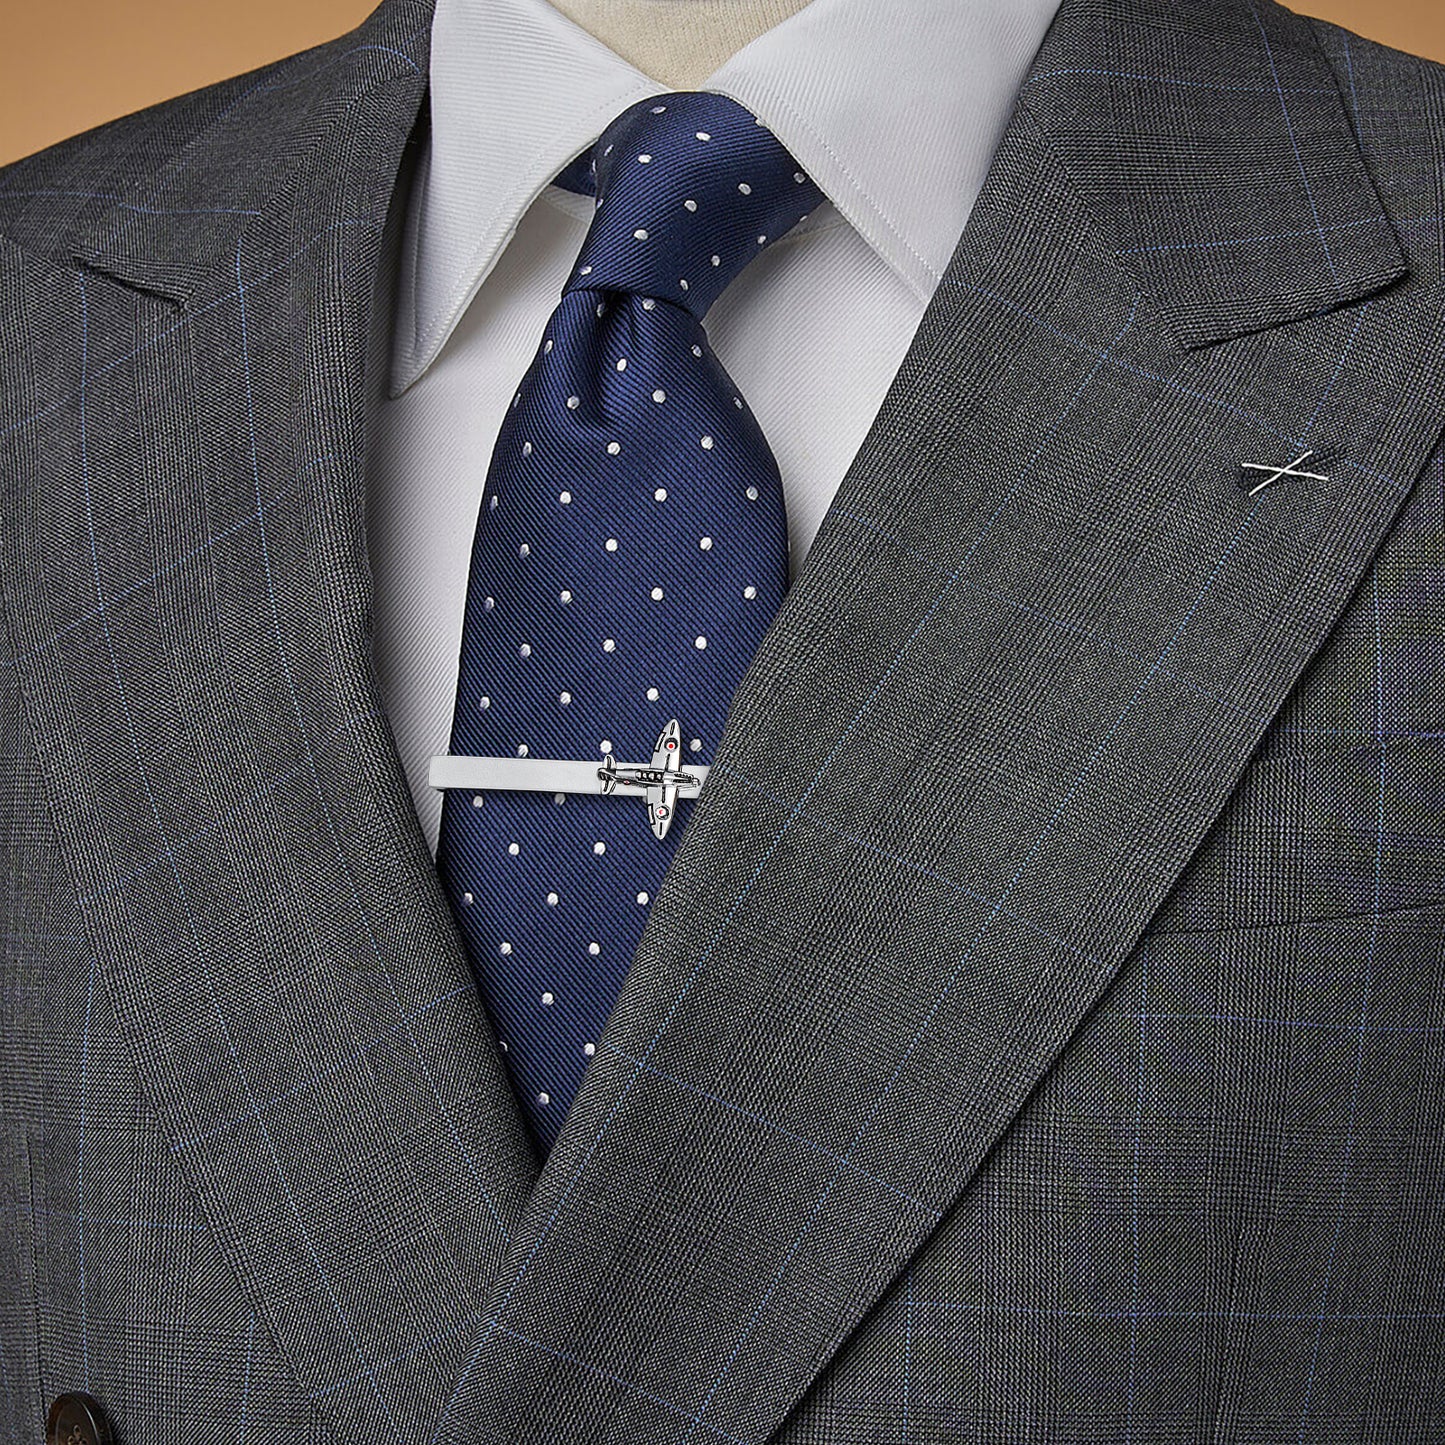 HAWSON Silver Tone Ariplane Cufflinks and Tie Clip Set for Men